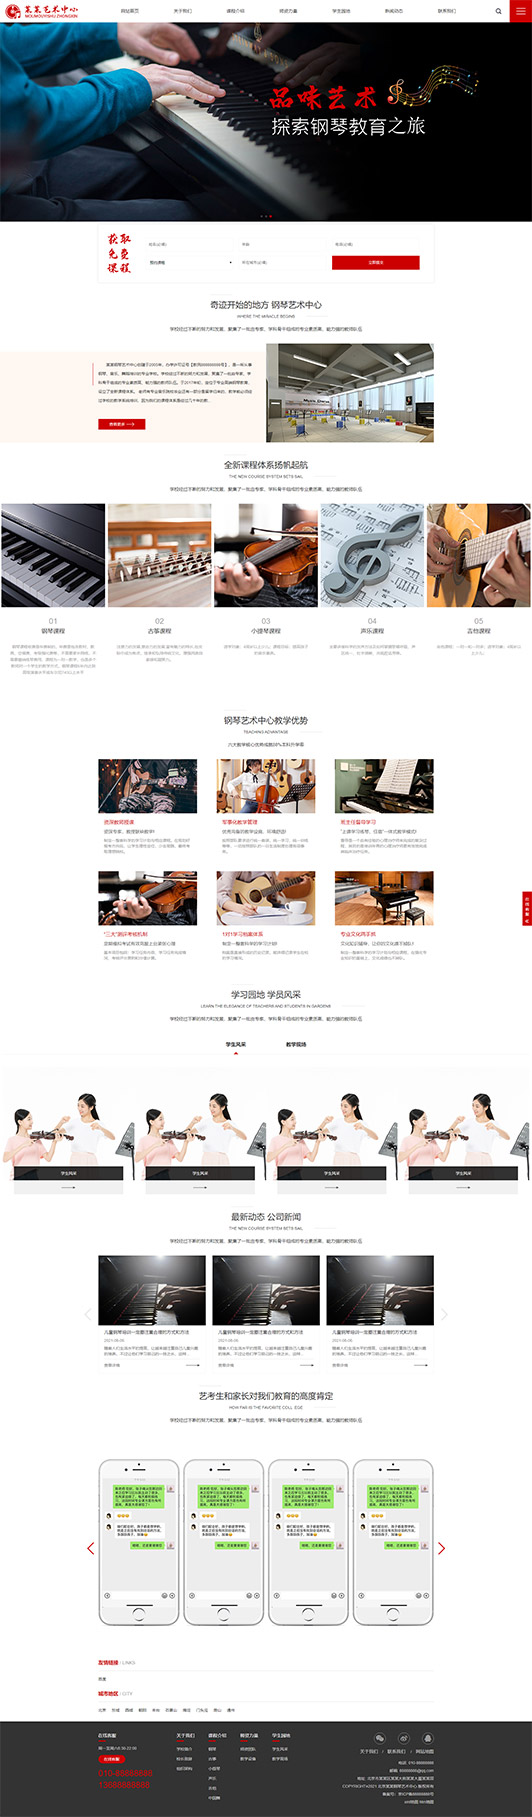 内蒙古钢琴艺术培训公司响应式企业网站